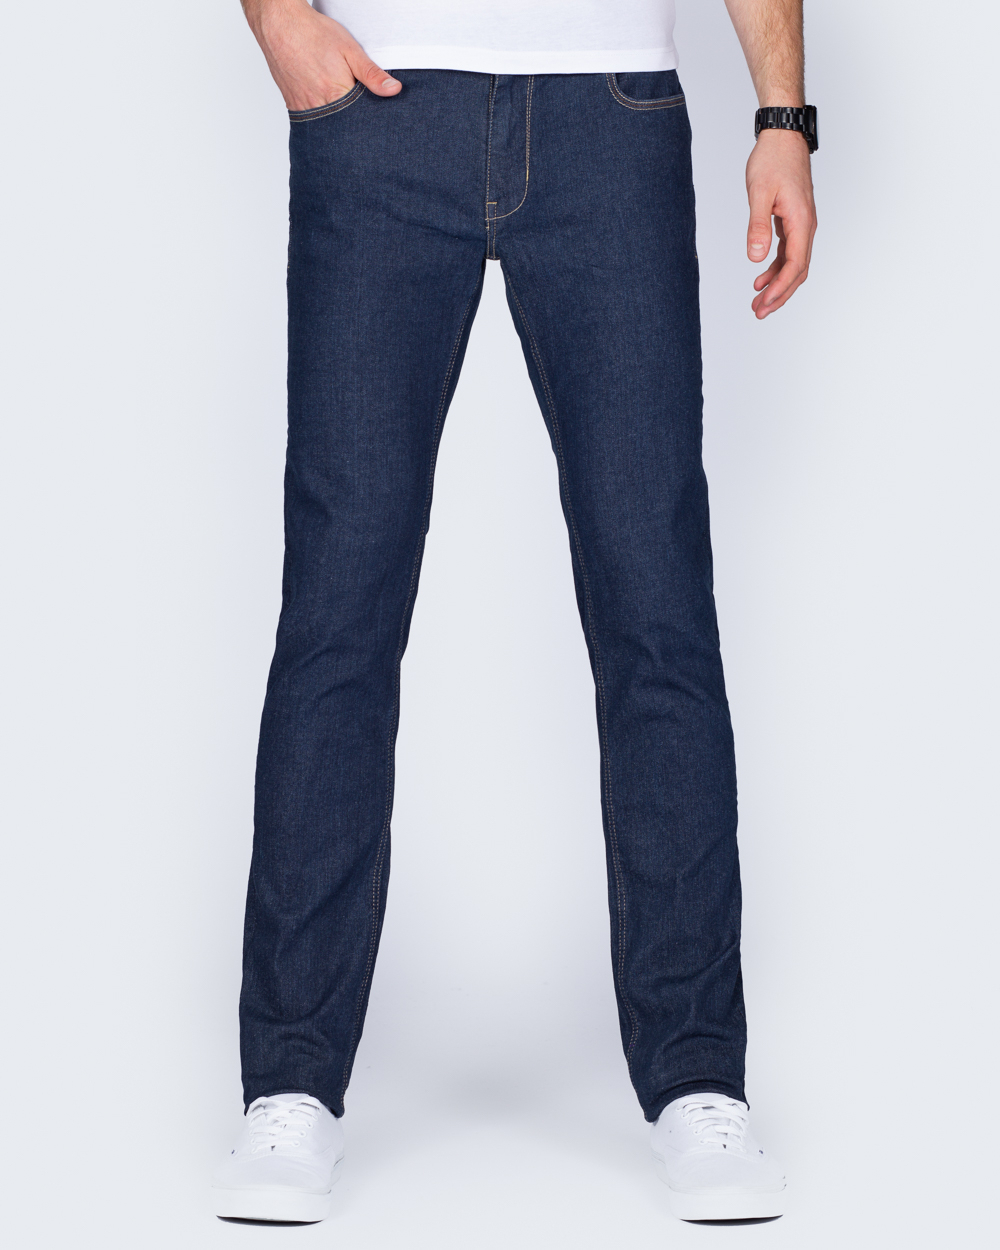 Mish Mash Camaro Tall Jeans (denim) | 2tall.com